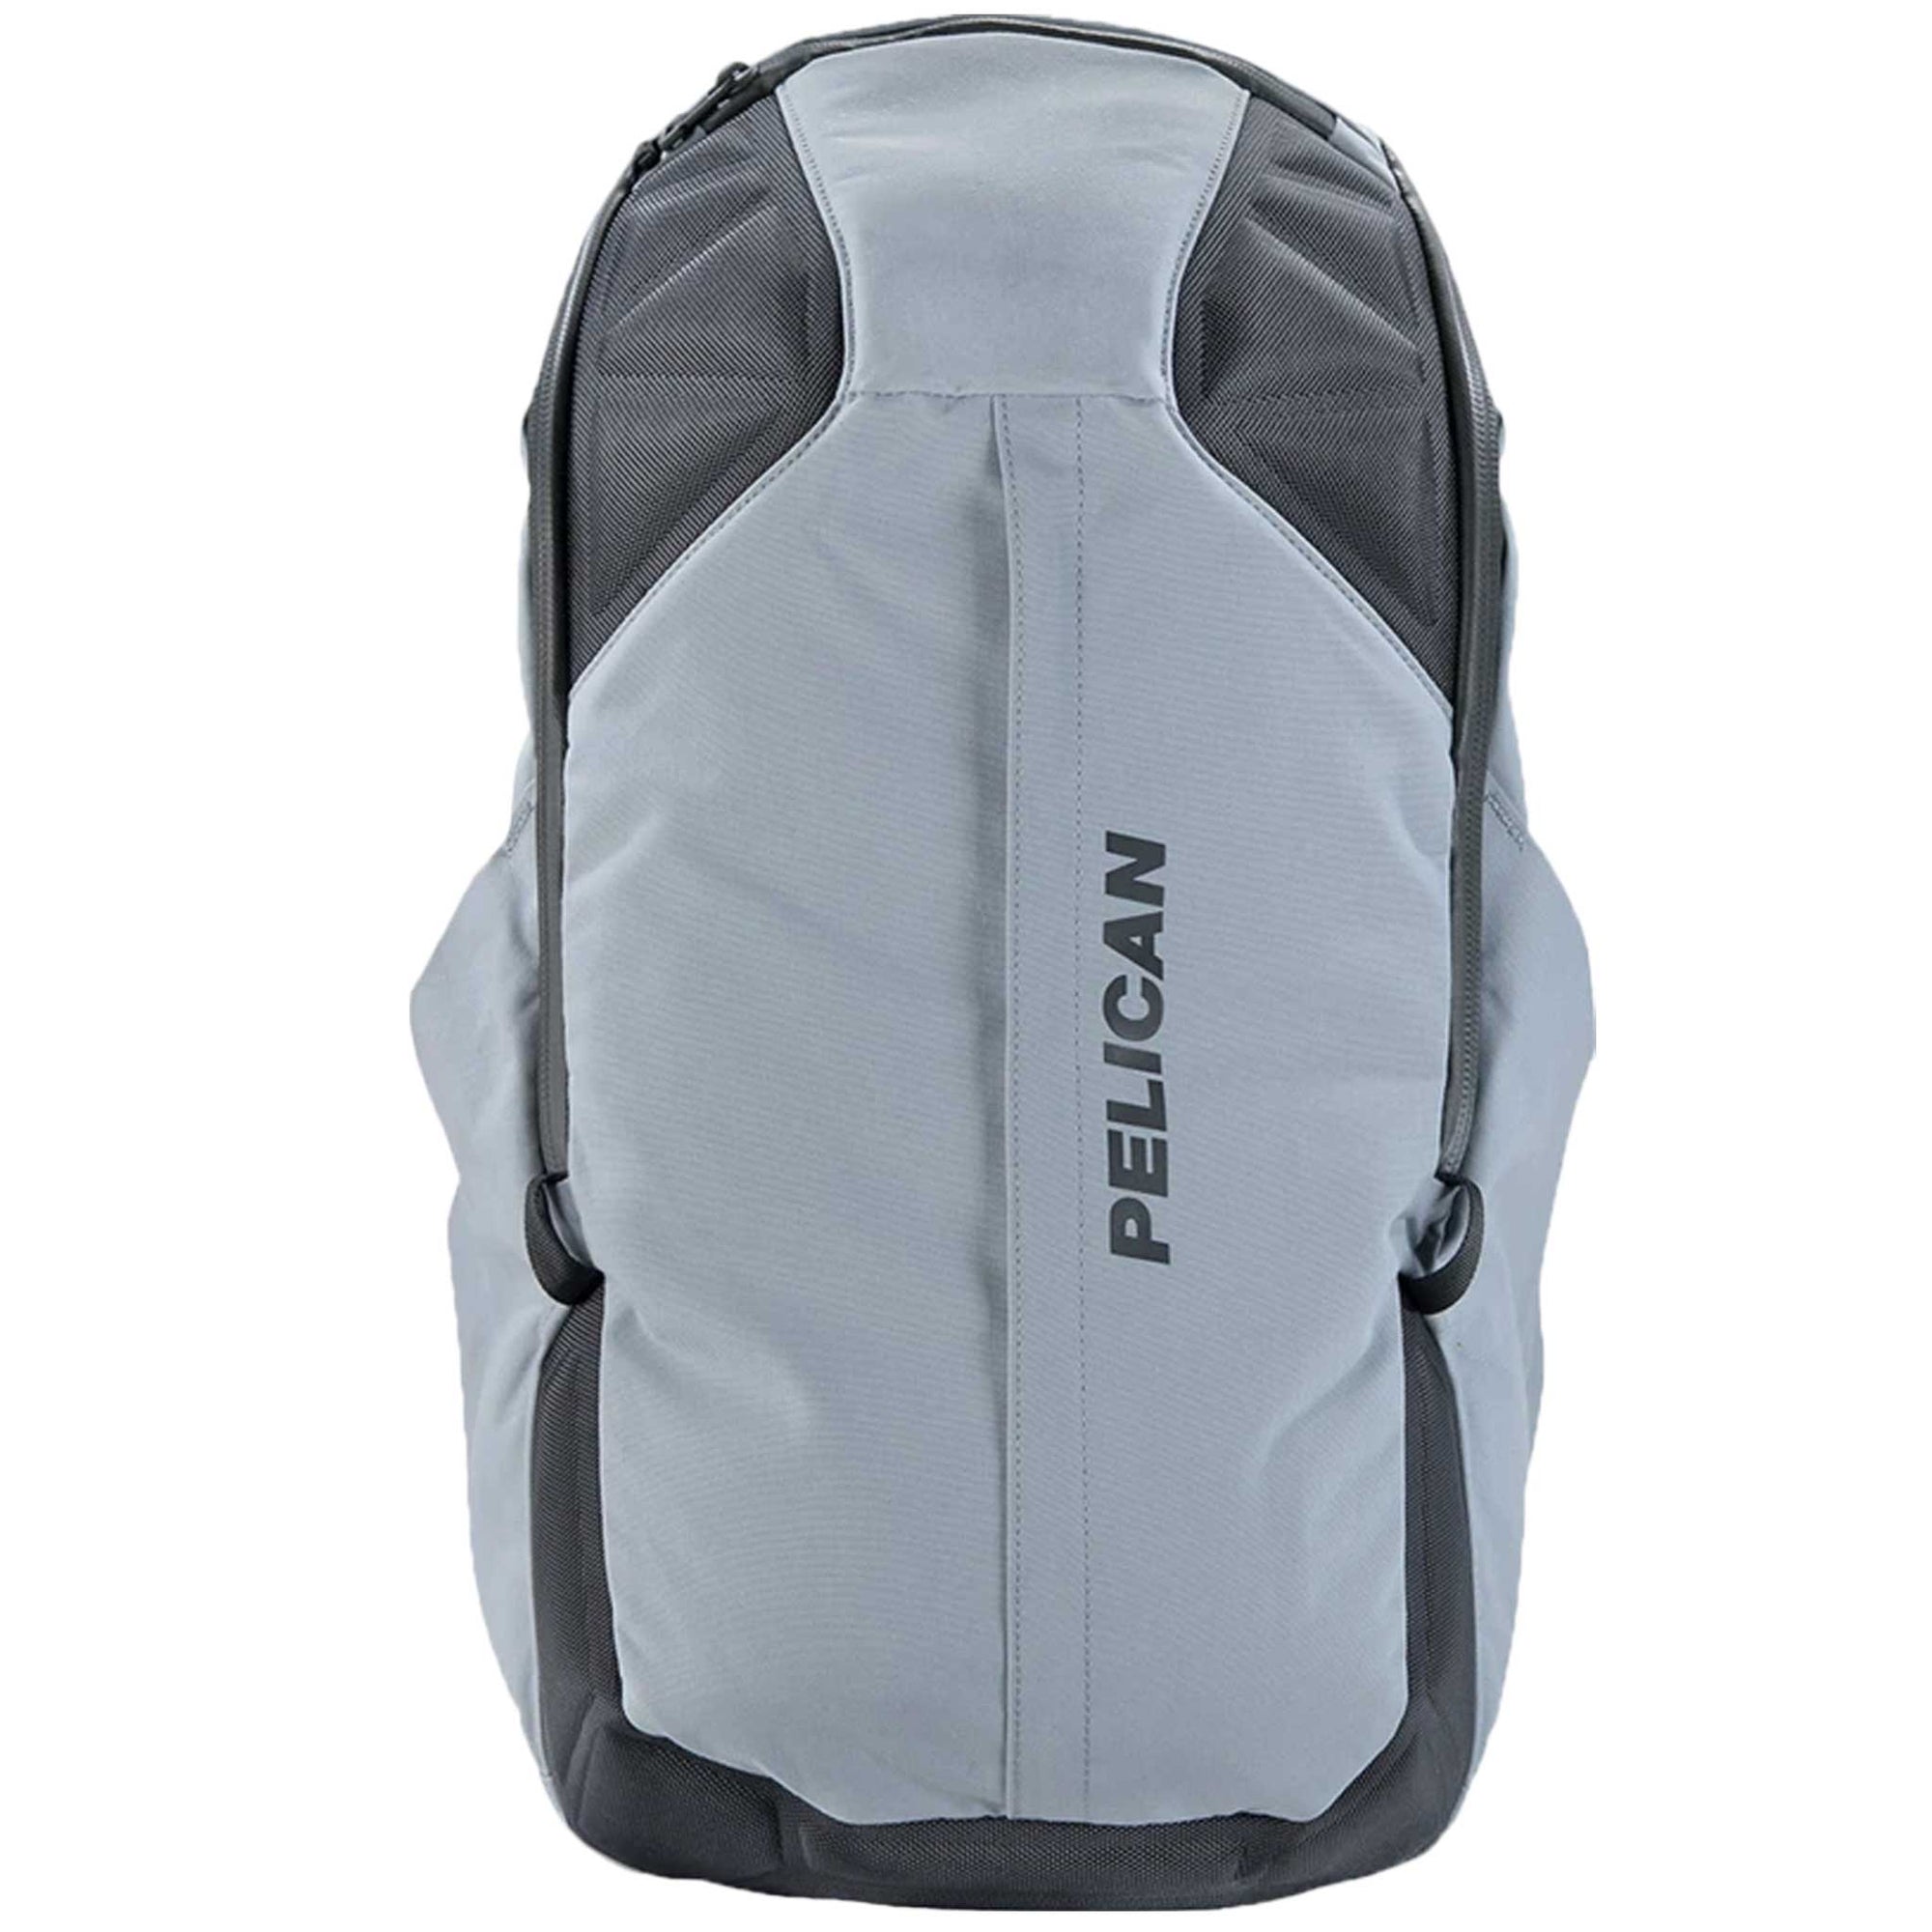 Pelican™ MPB35 Backpack in grey